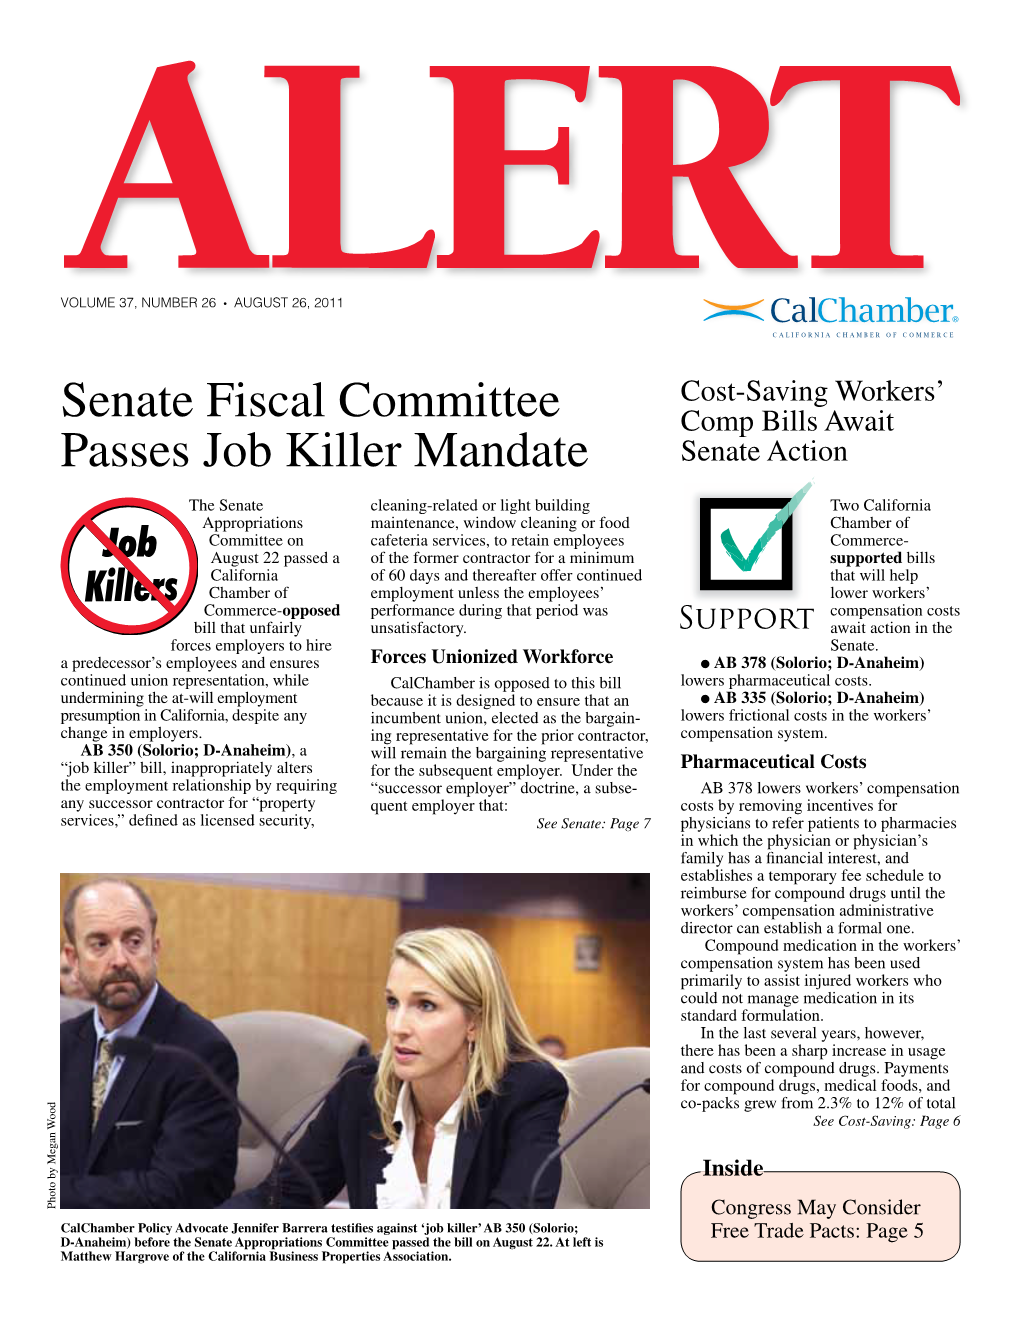 Senate Fiscal Committee Passes Job Killer Mandate